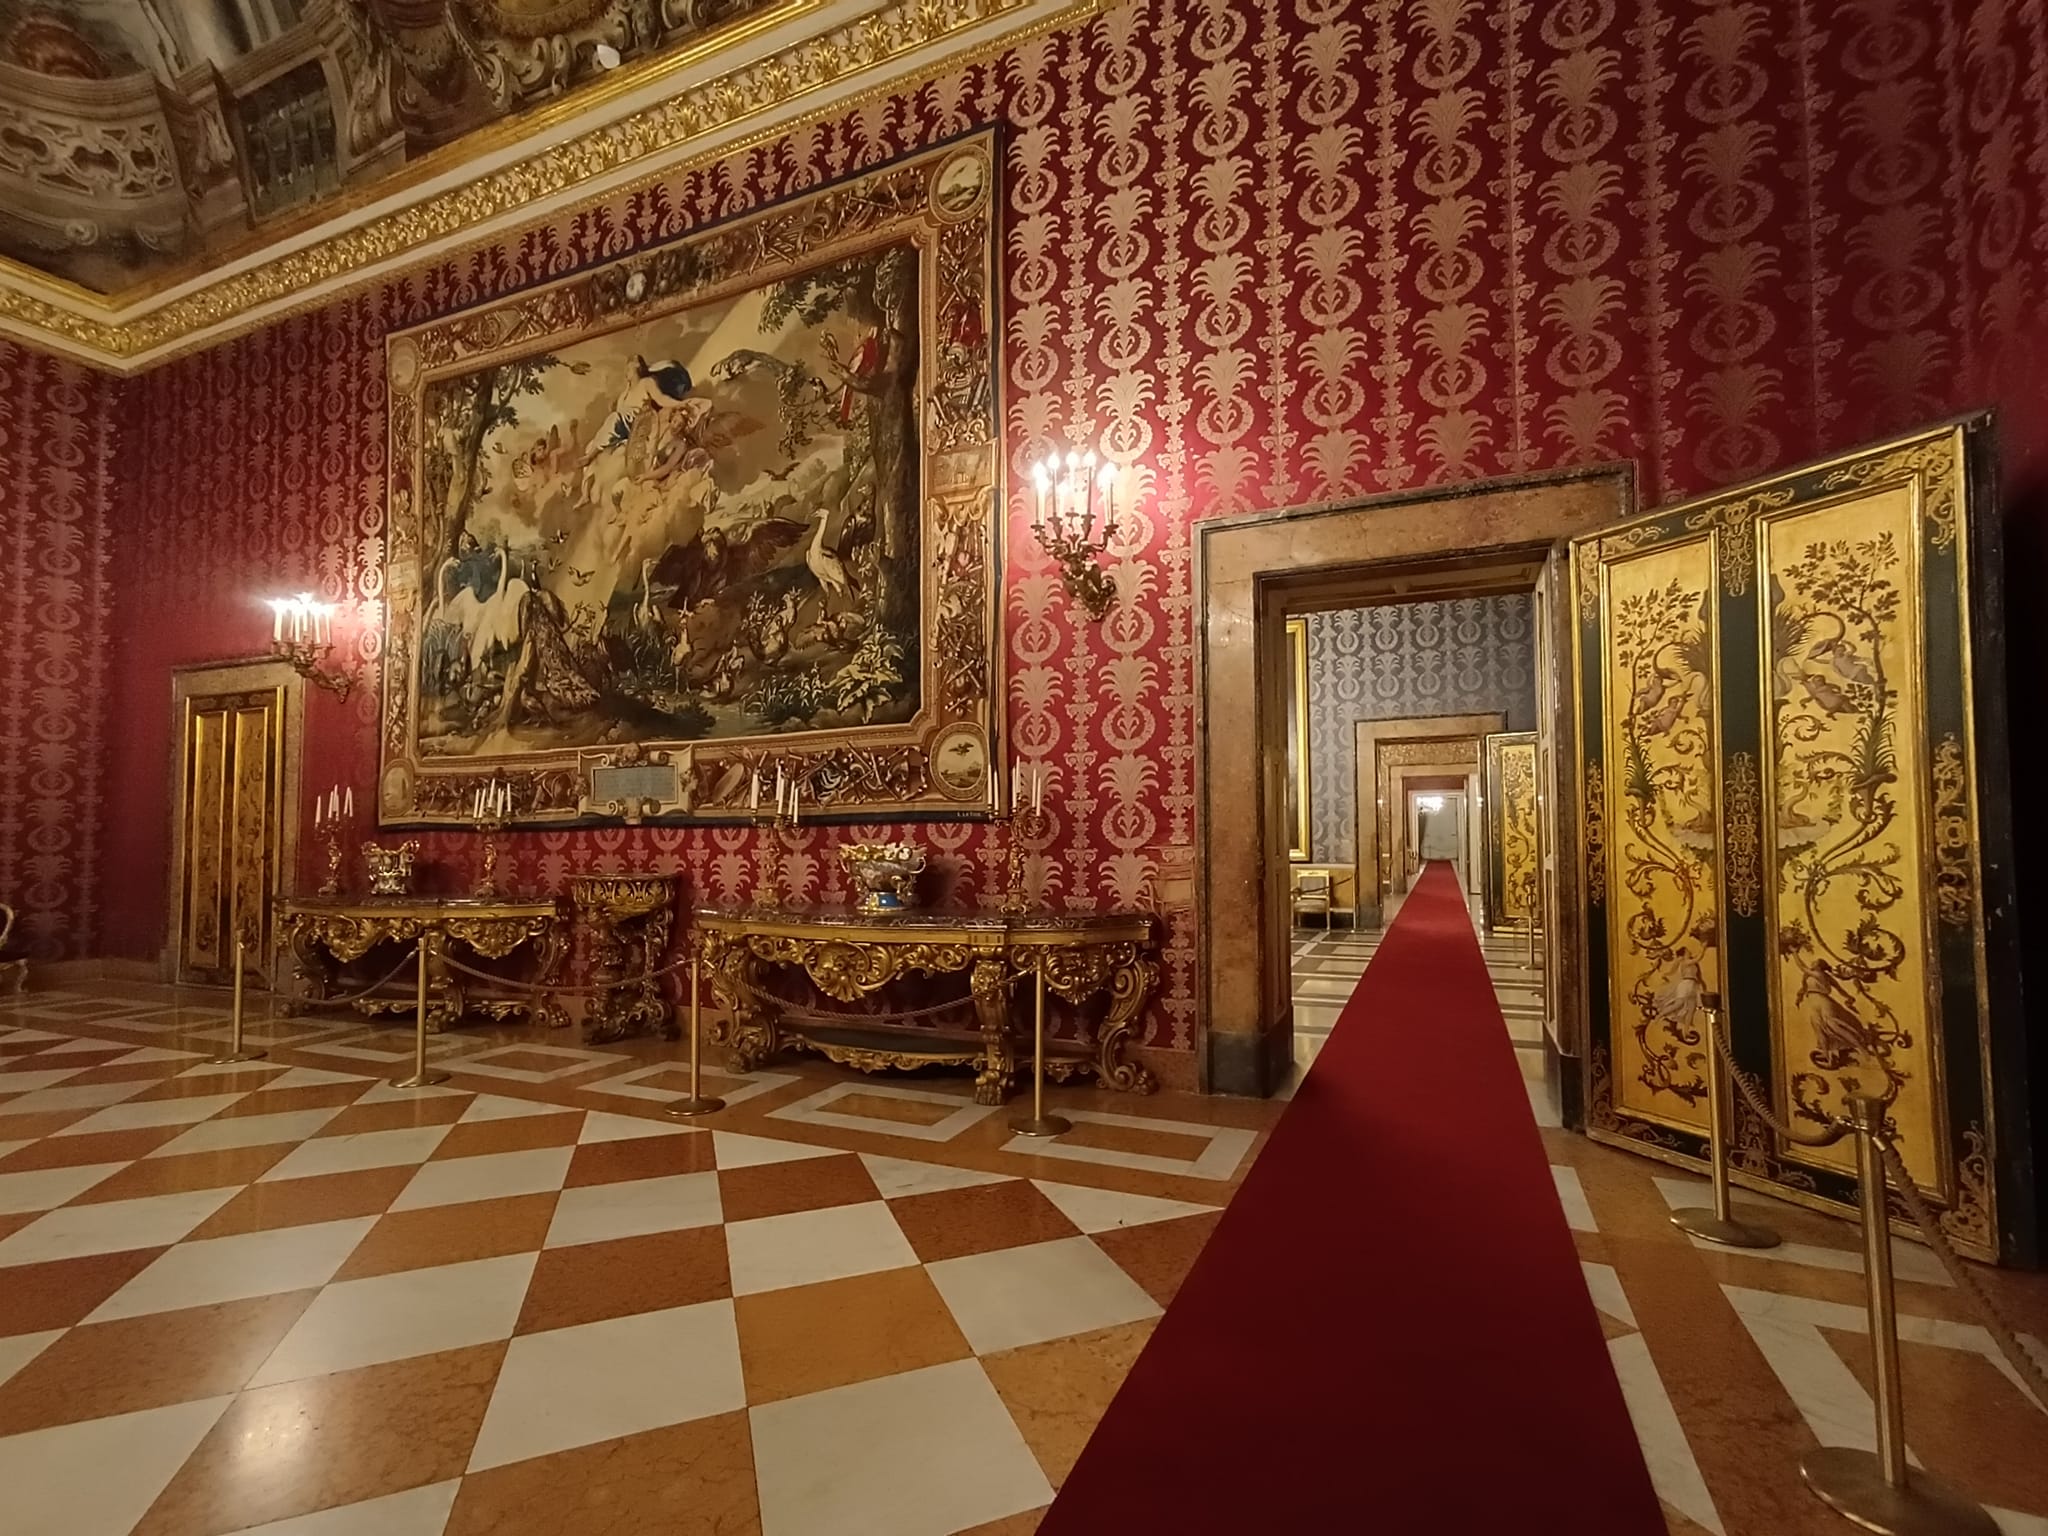 visite gratis deposito foriera palazzo reale napoli